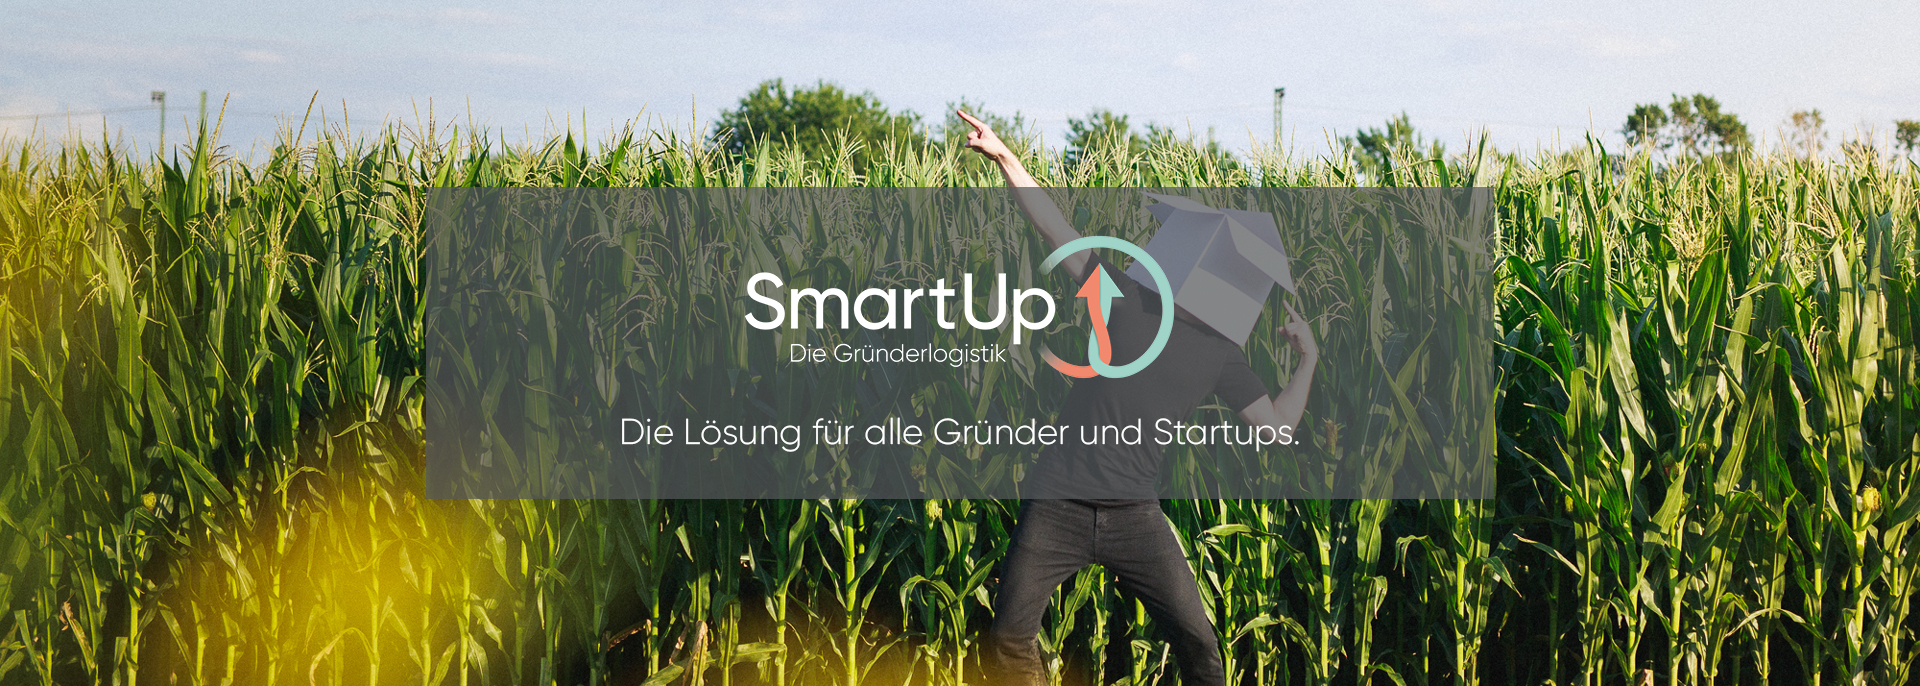 SmartUp - eine Marke von Deventer für Gründer